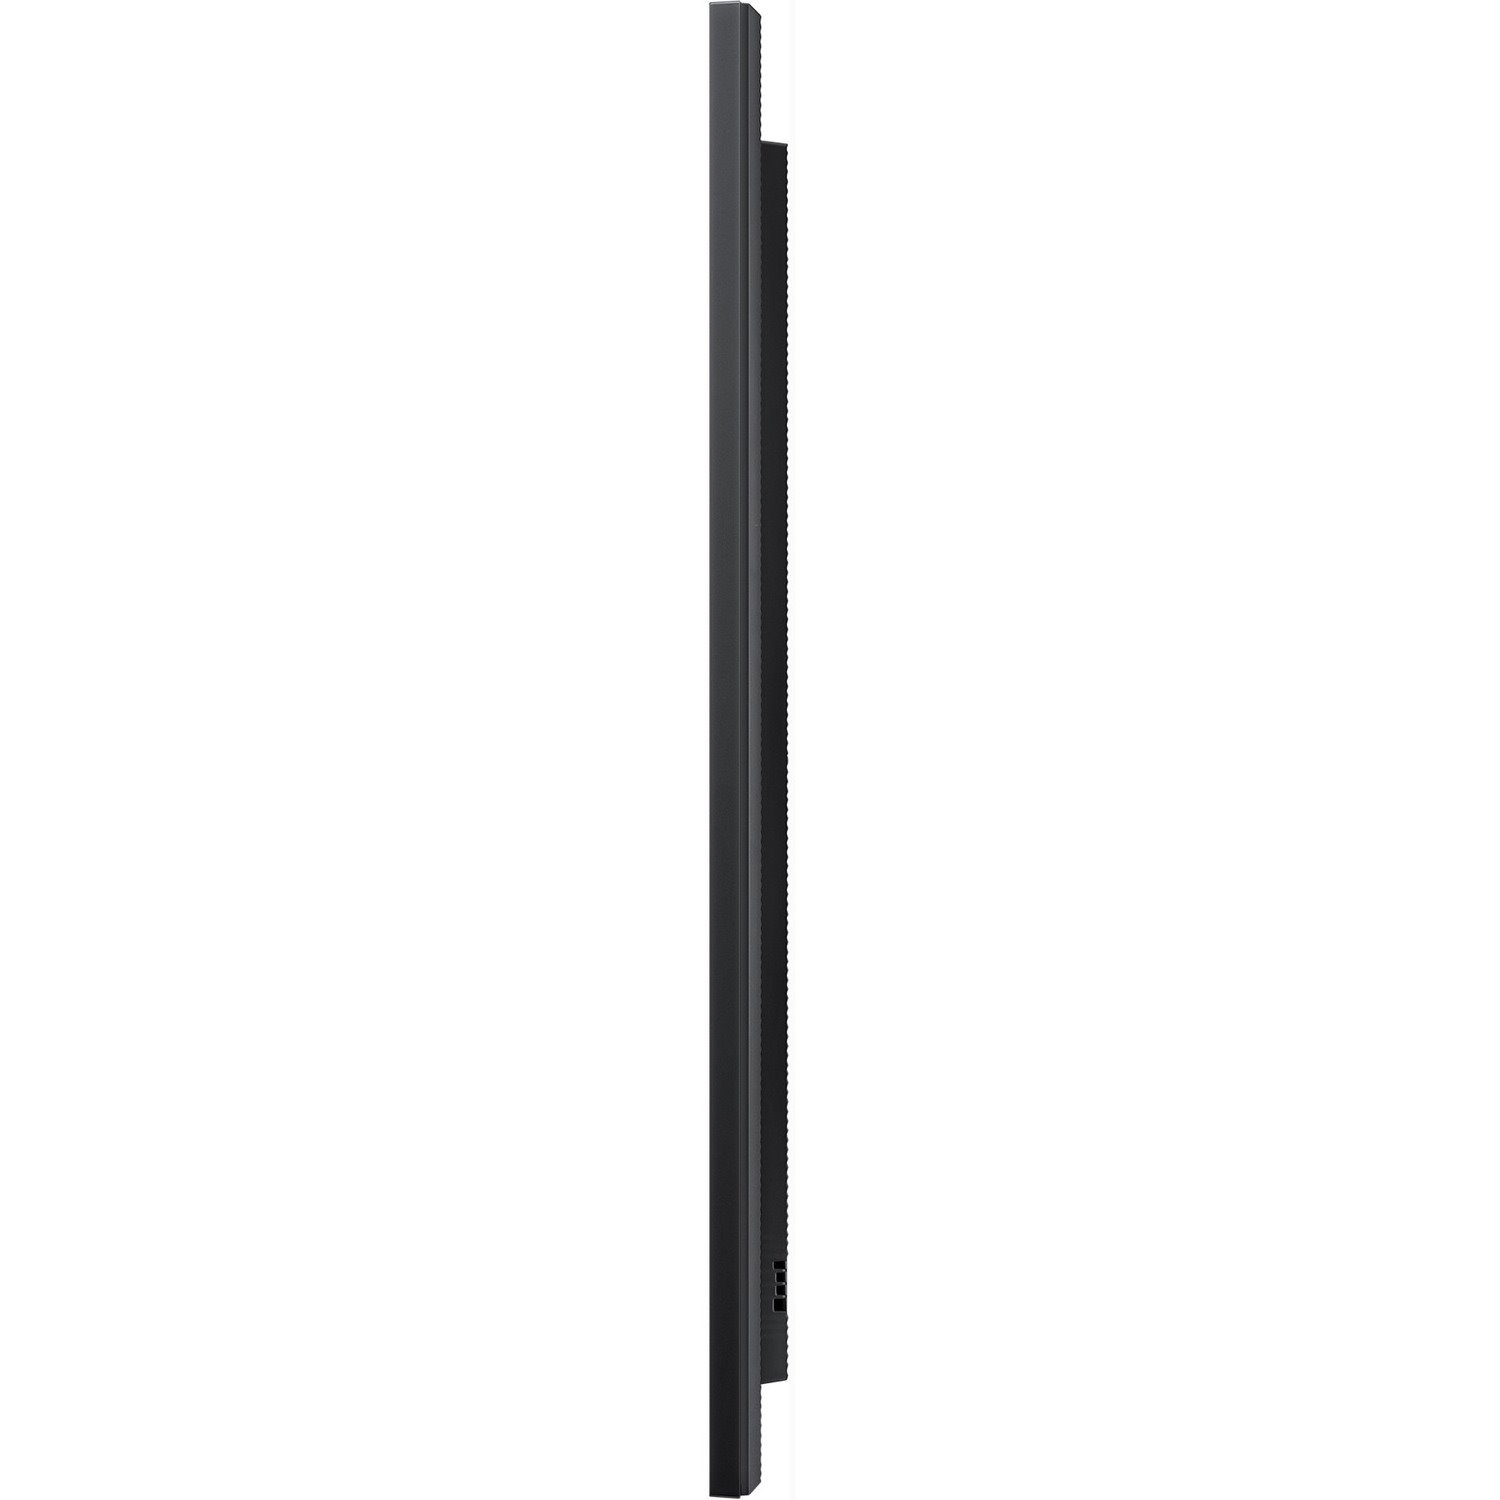 Samsung QM75R-A 190.5 cm (75") LCD Digital Signage Display